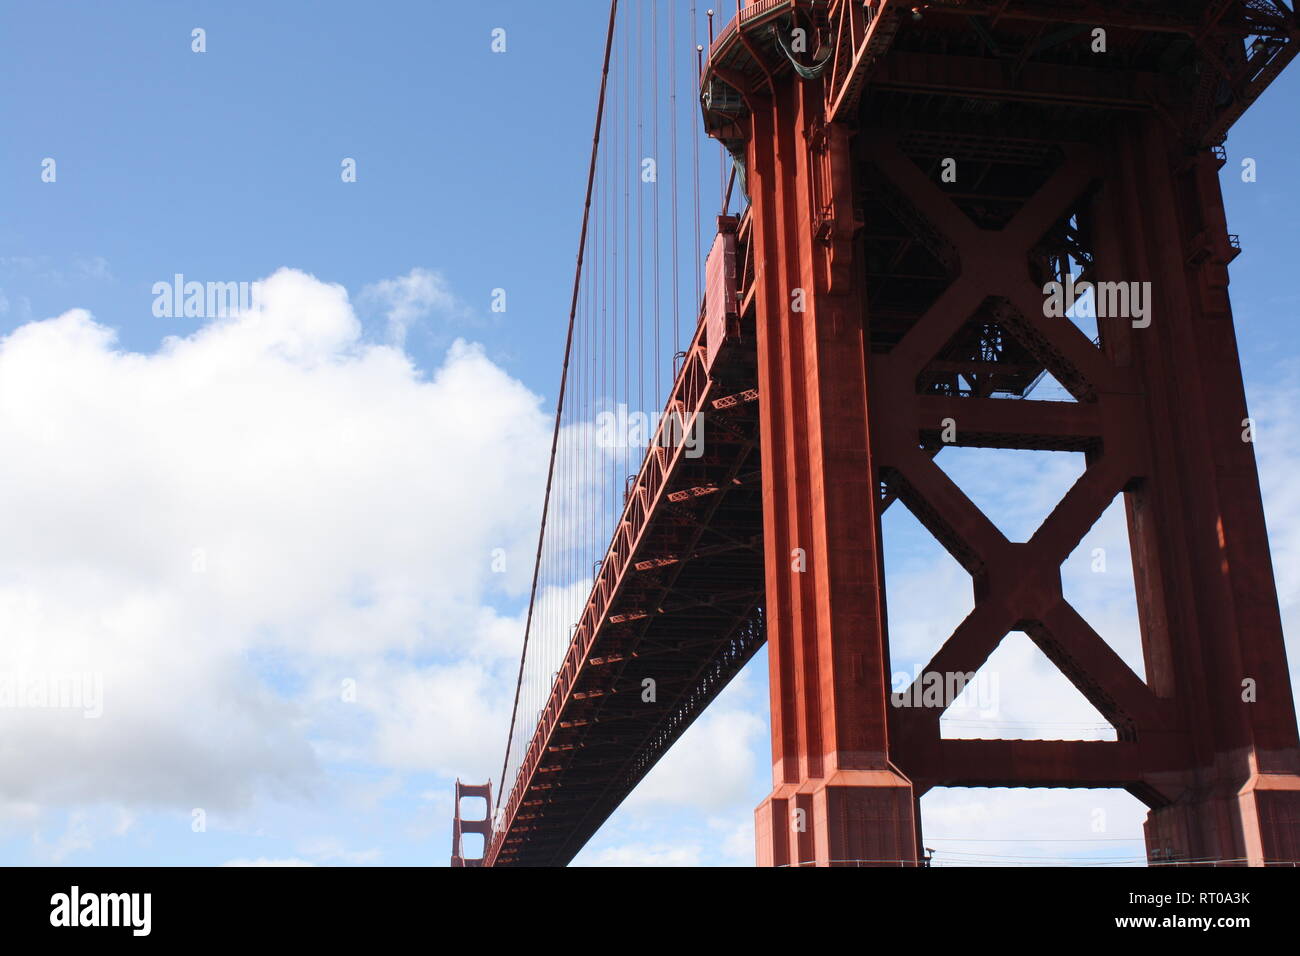 San Francisco Bridge von unten Winkel mit einem hellen, schönen Himmel. Der Kontrast in der Natur des Himmels und Fett Metall der Brücke ist fesselnd. Stockfoto